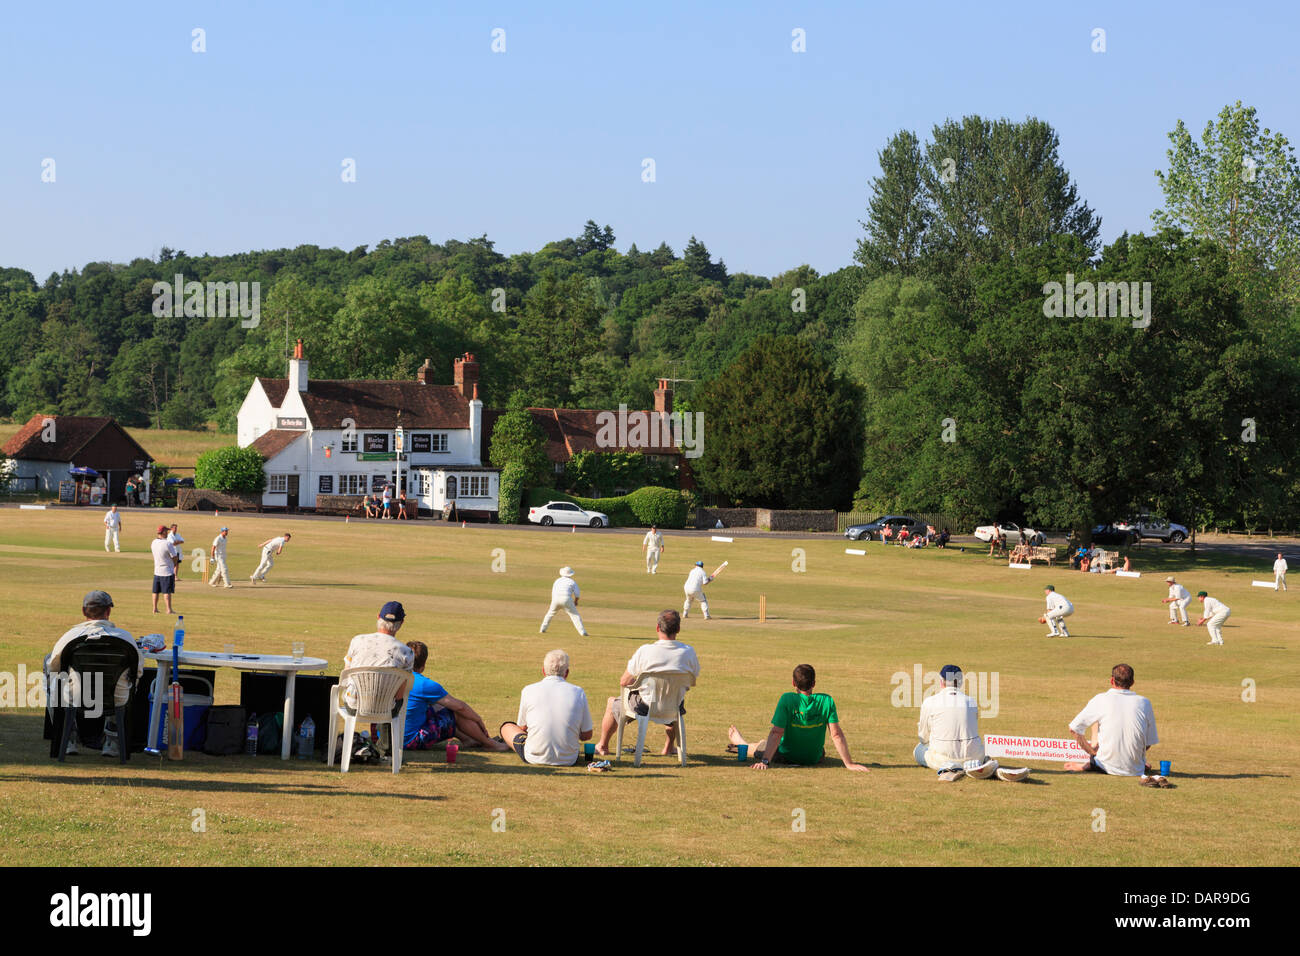 Lokale Team spielen Cricket Match auf Village Green vor der Gerste Mähen Pub an einem Sommerabend. Tilford Surrey England Großbritannien Großbritannien Stockfoto